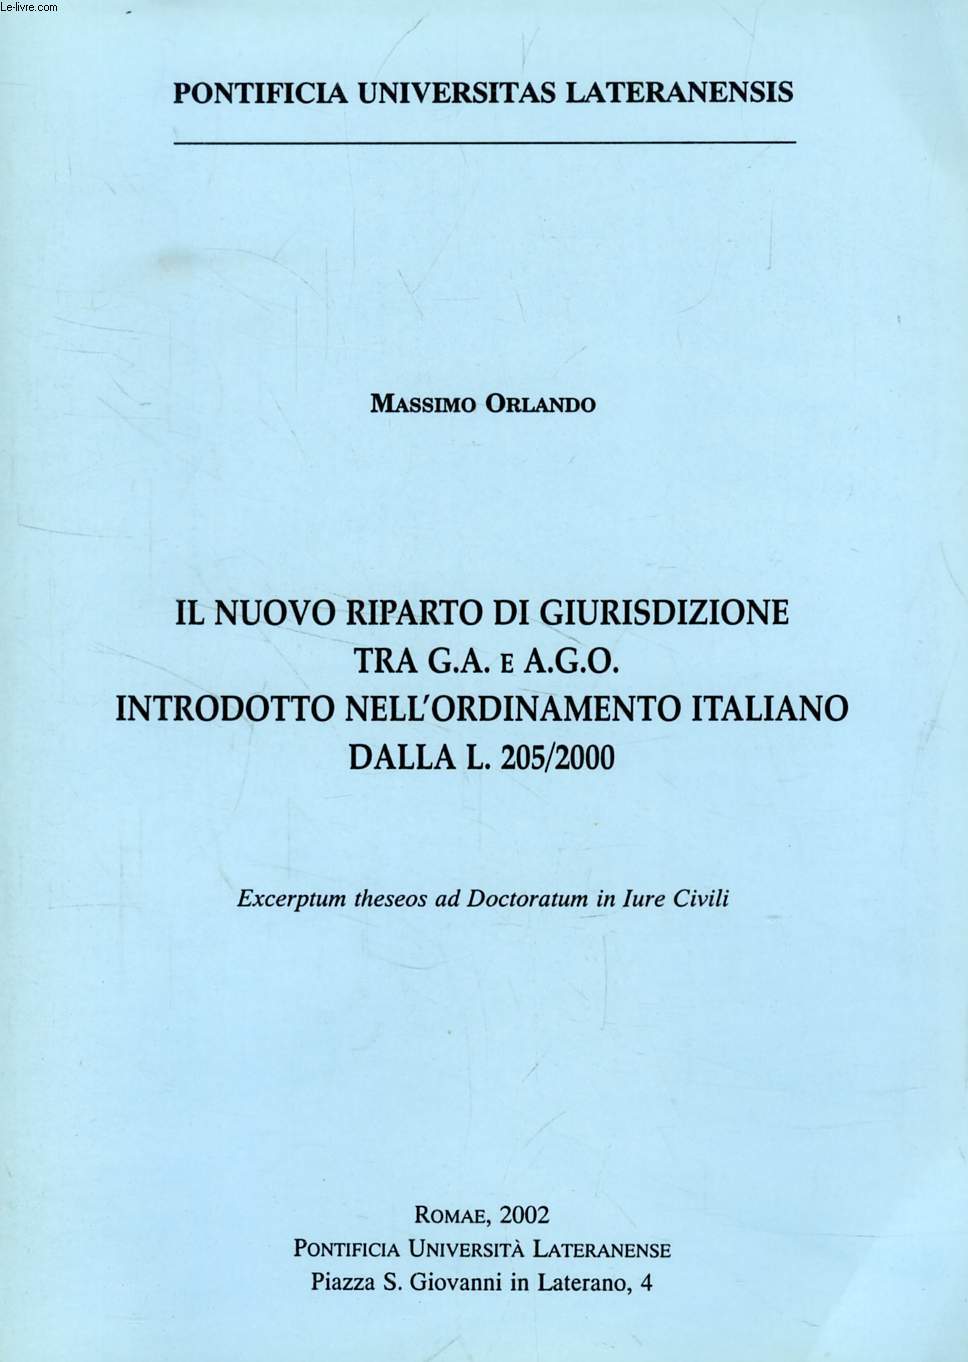 IL NUOVO RIPARTO DI GIURISDIZIONE TRA G.A. E A.G.O. INTRODOTTO NELL'ORDINAMENTO ITALIANO DALLA L. 205/2000 (EXCERPTUM THESEOS)